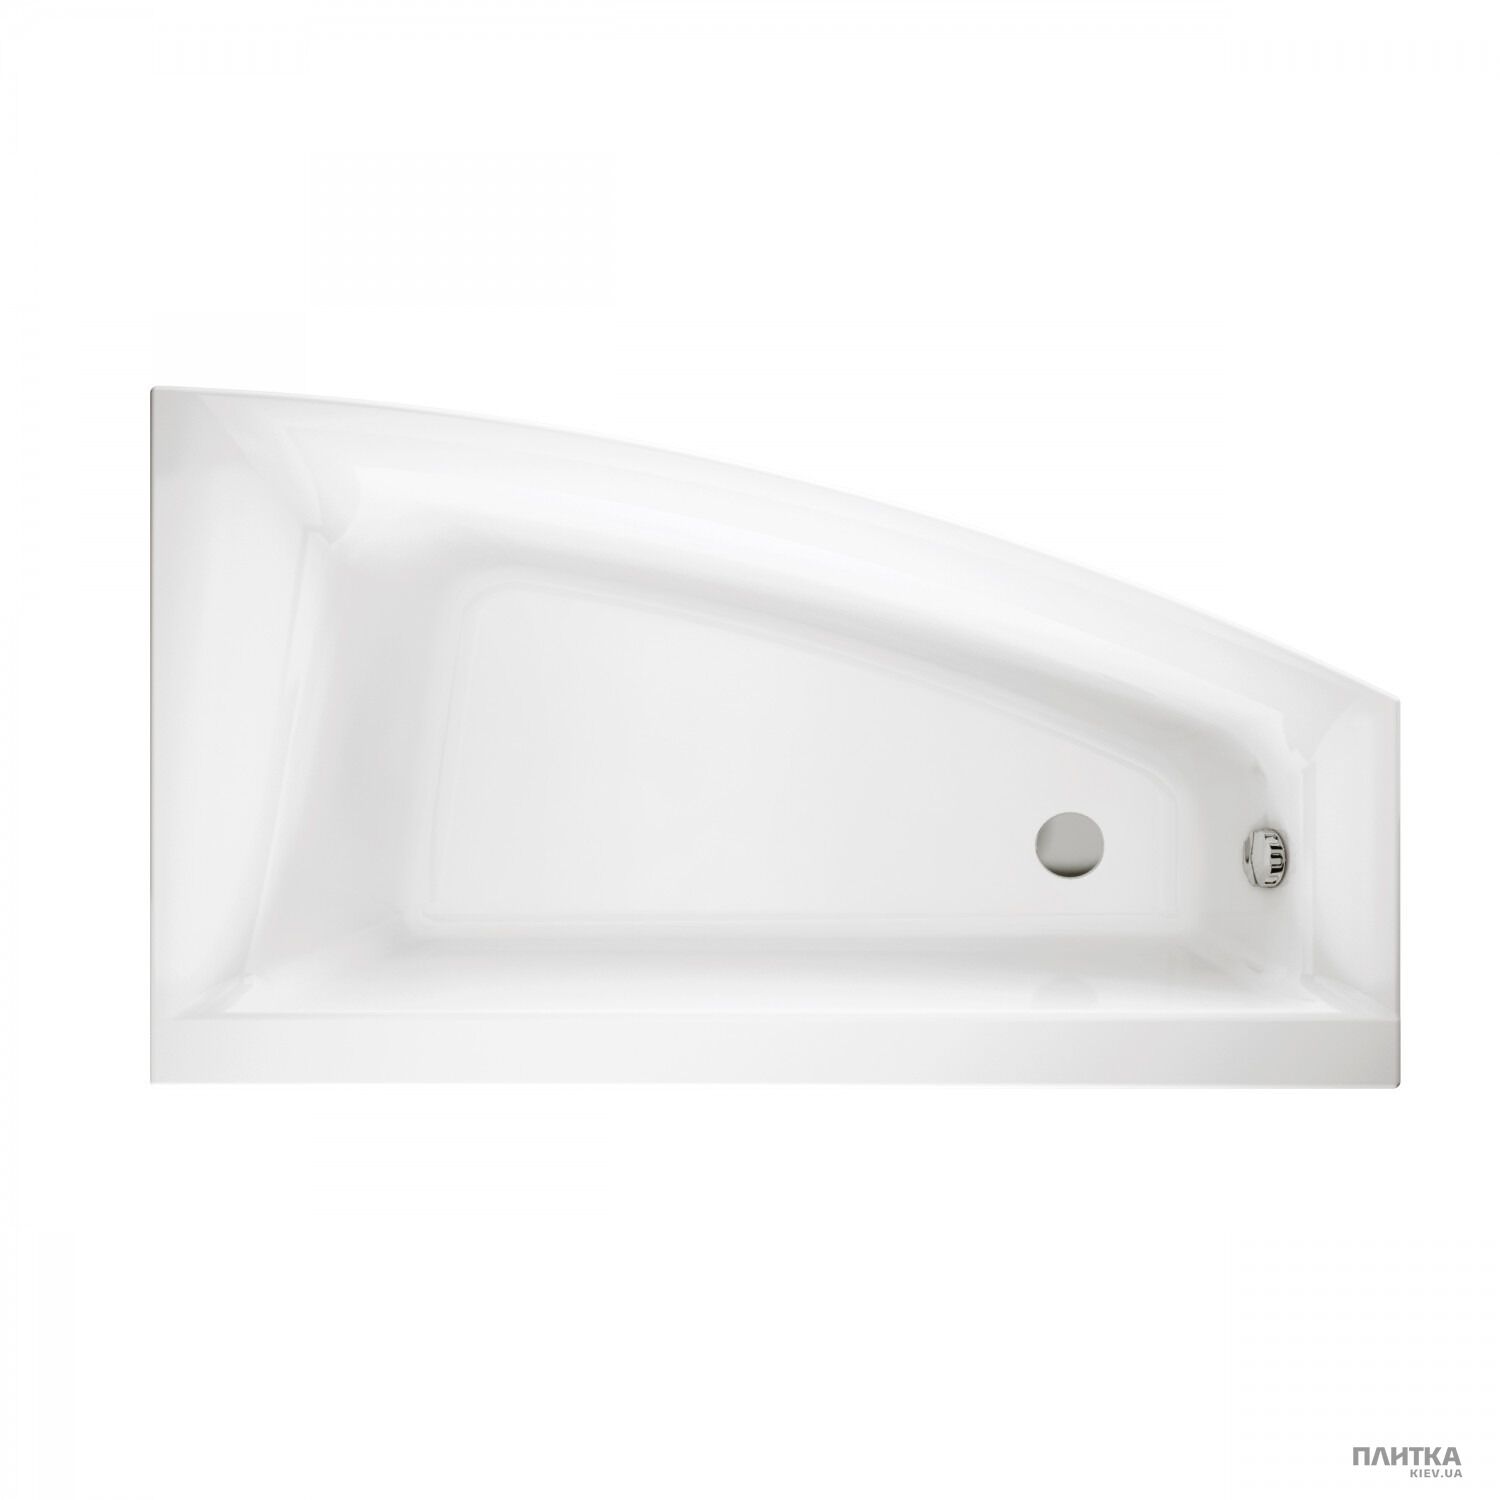 Акриловая ванна Cersanit Virgo max 160x90 см асимметричная правая белый